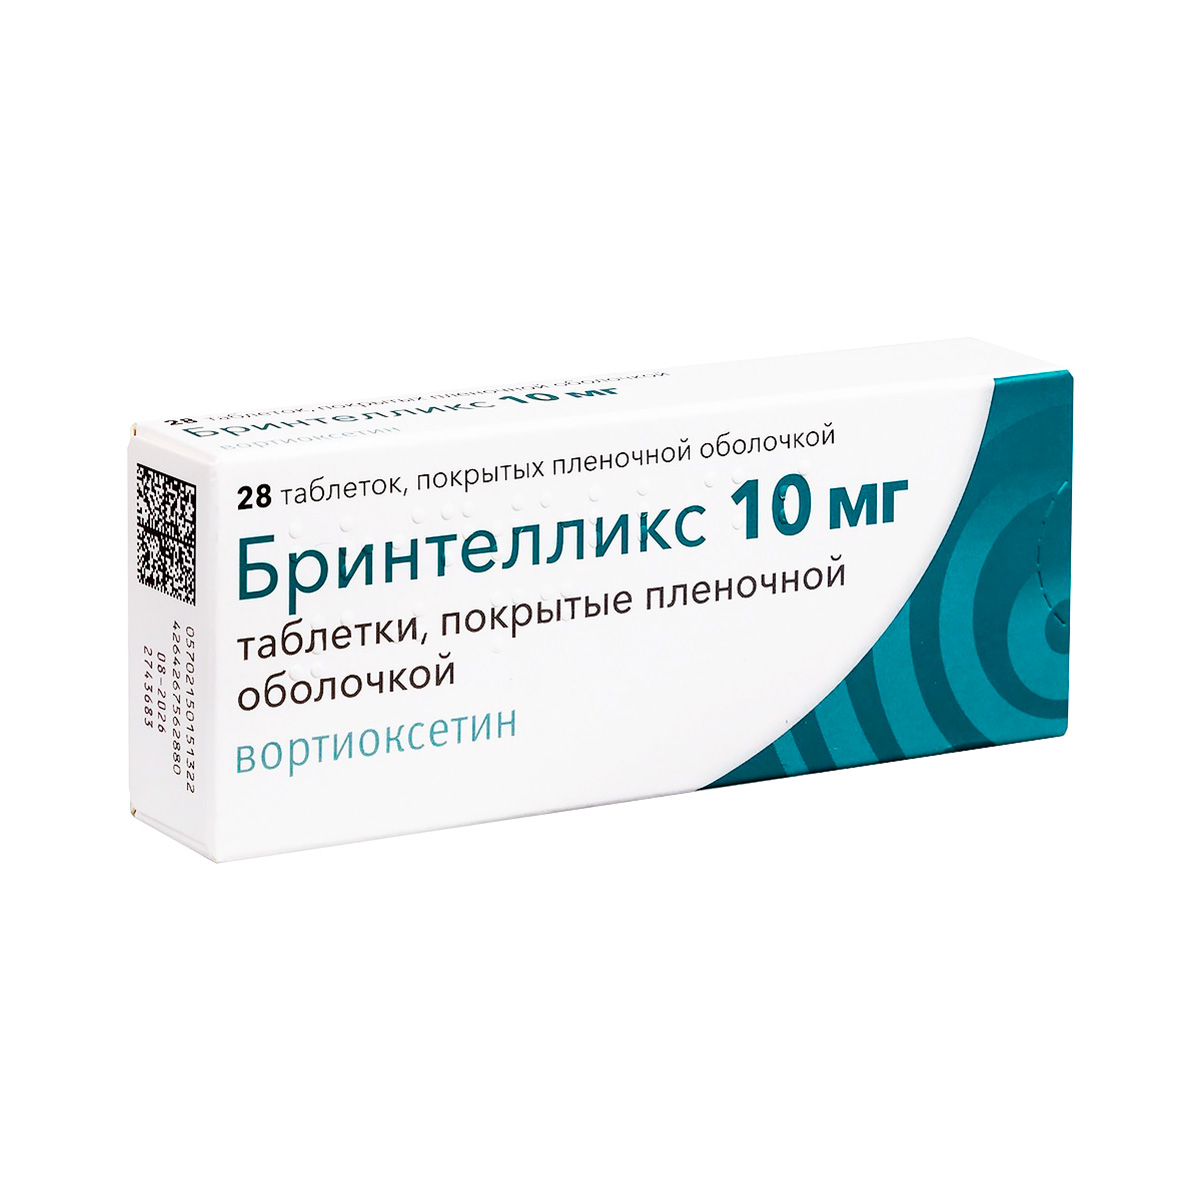 Бринтелликс 10 мг таблетки покрытые пленочной оболочкой 28 шт